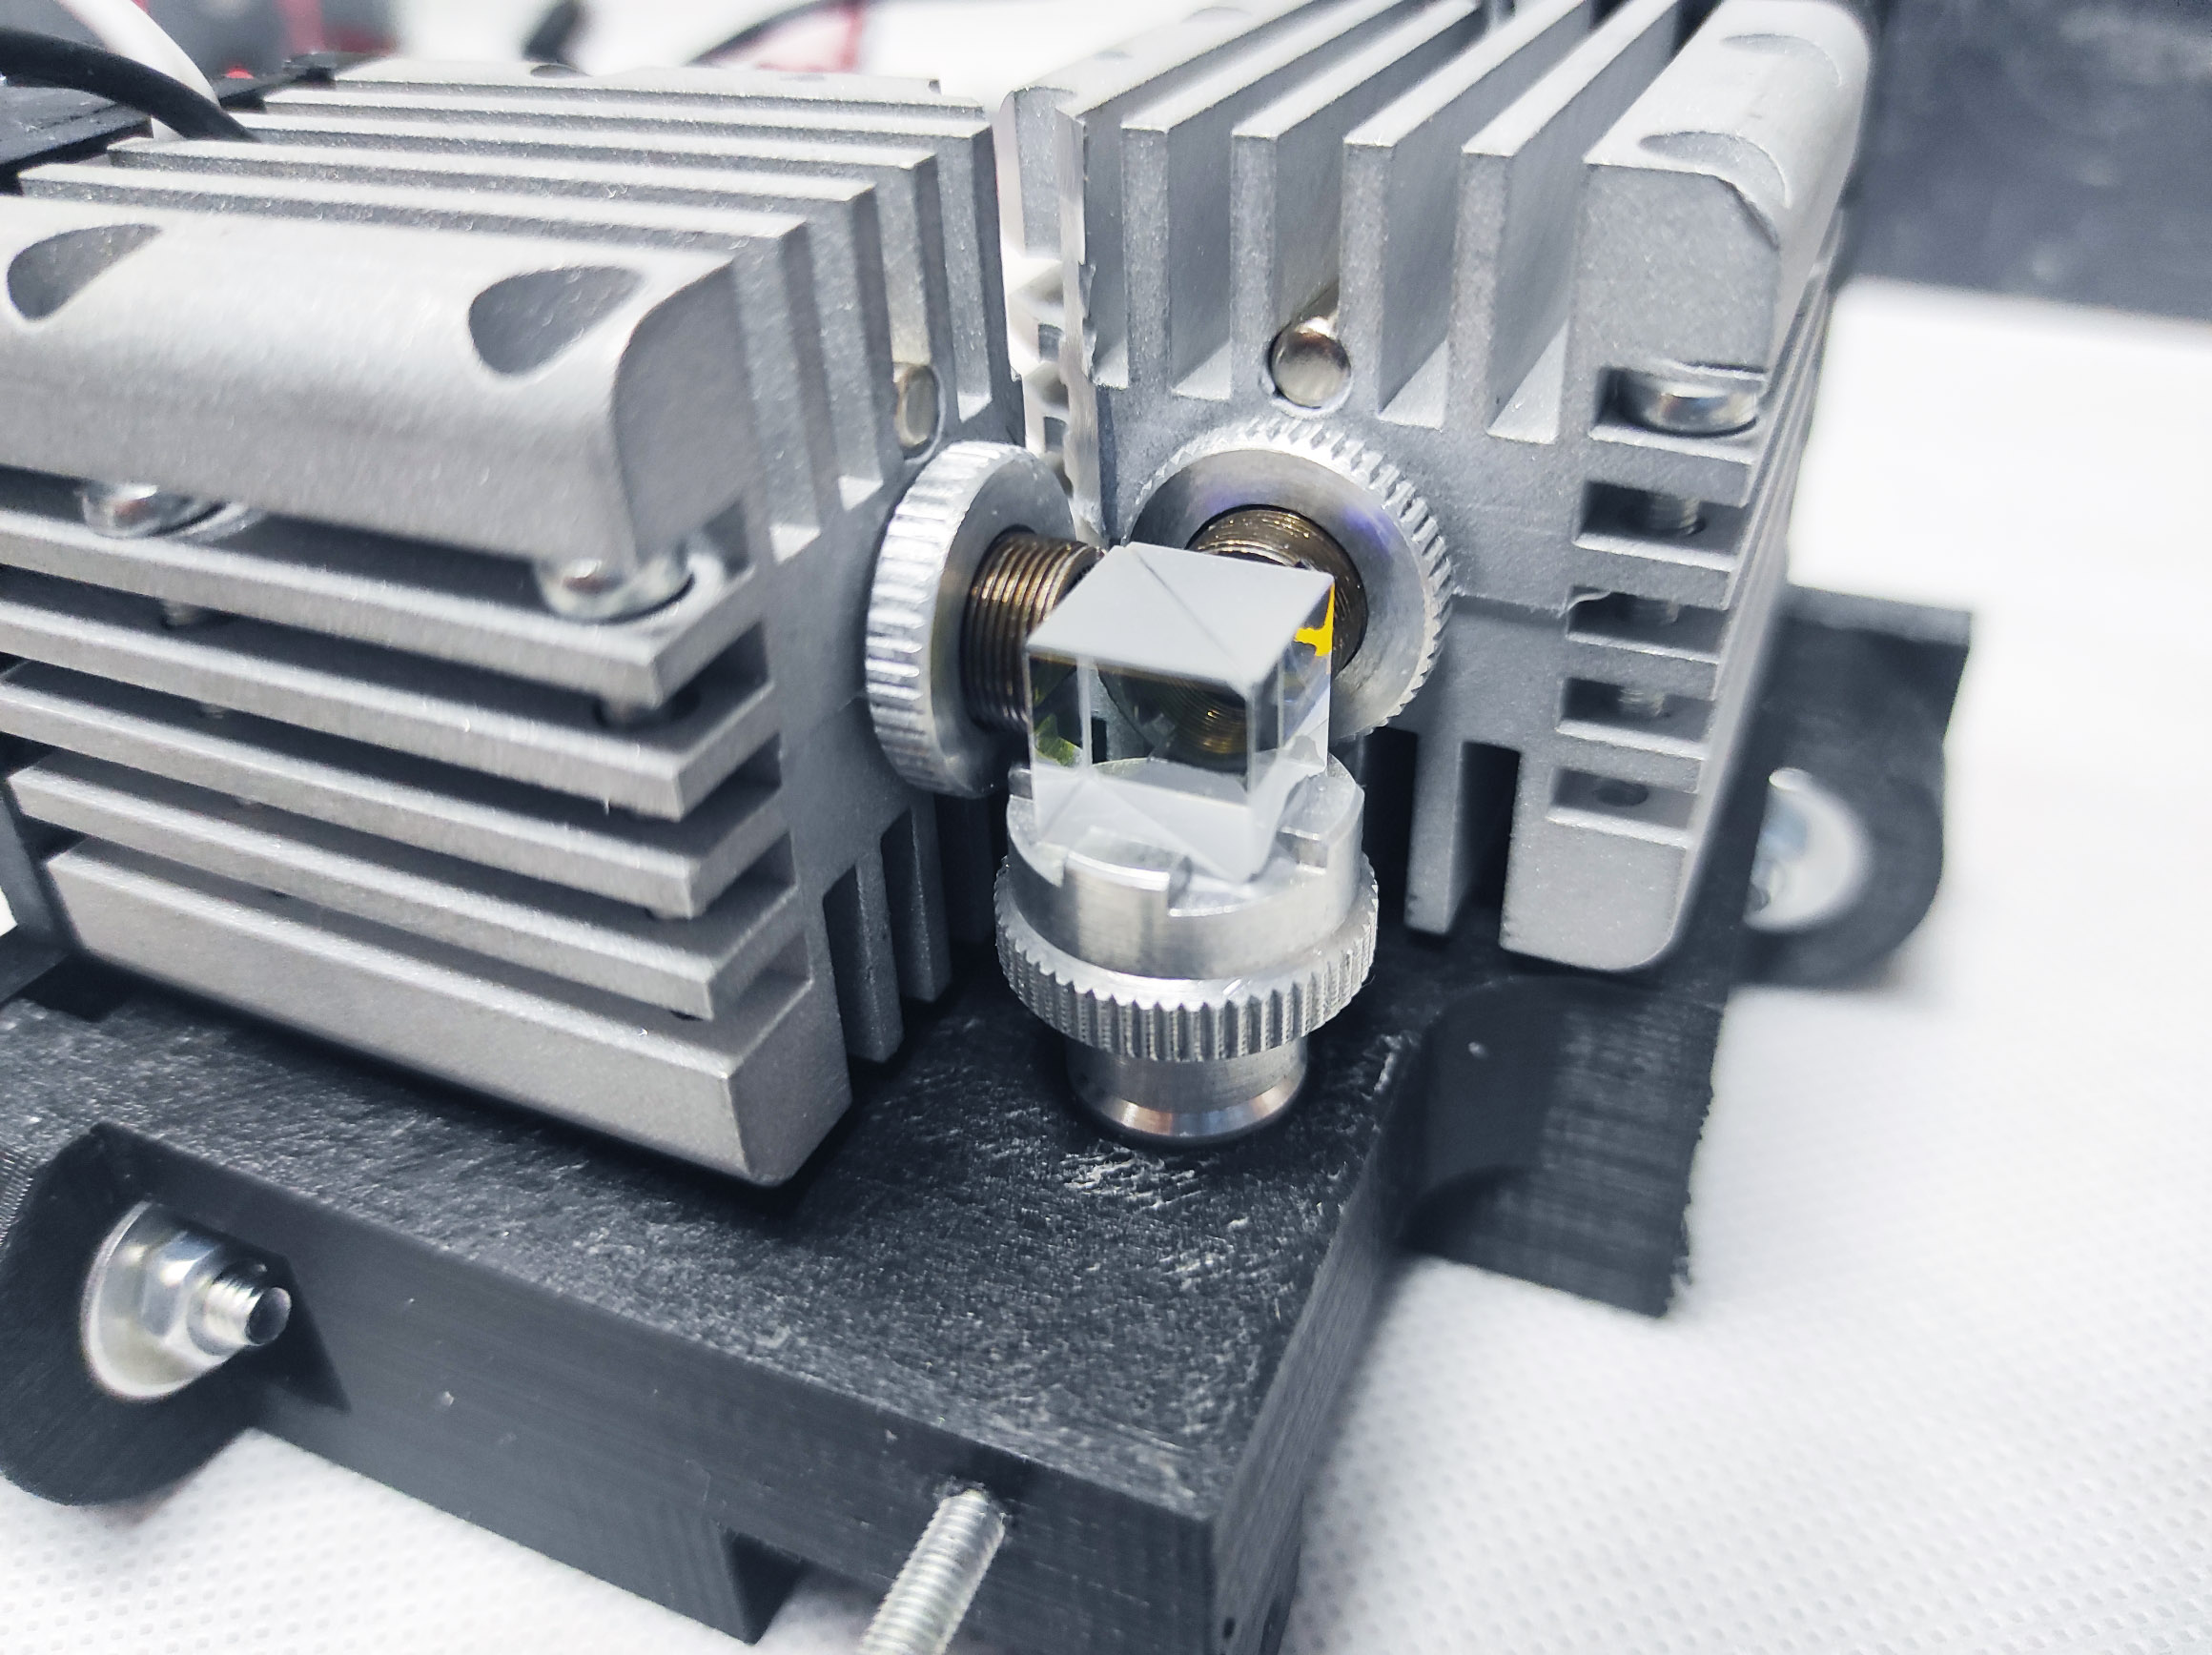 Endurance 15 watt DUOS laser beam DIY upgrade kit - EnduranceLasers